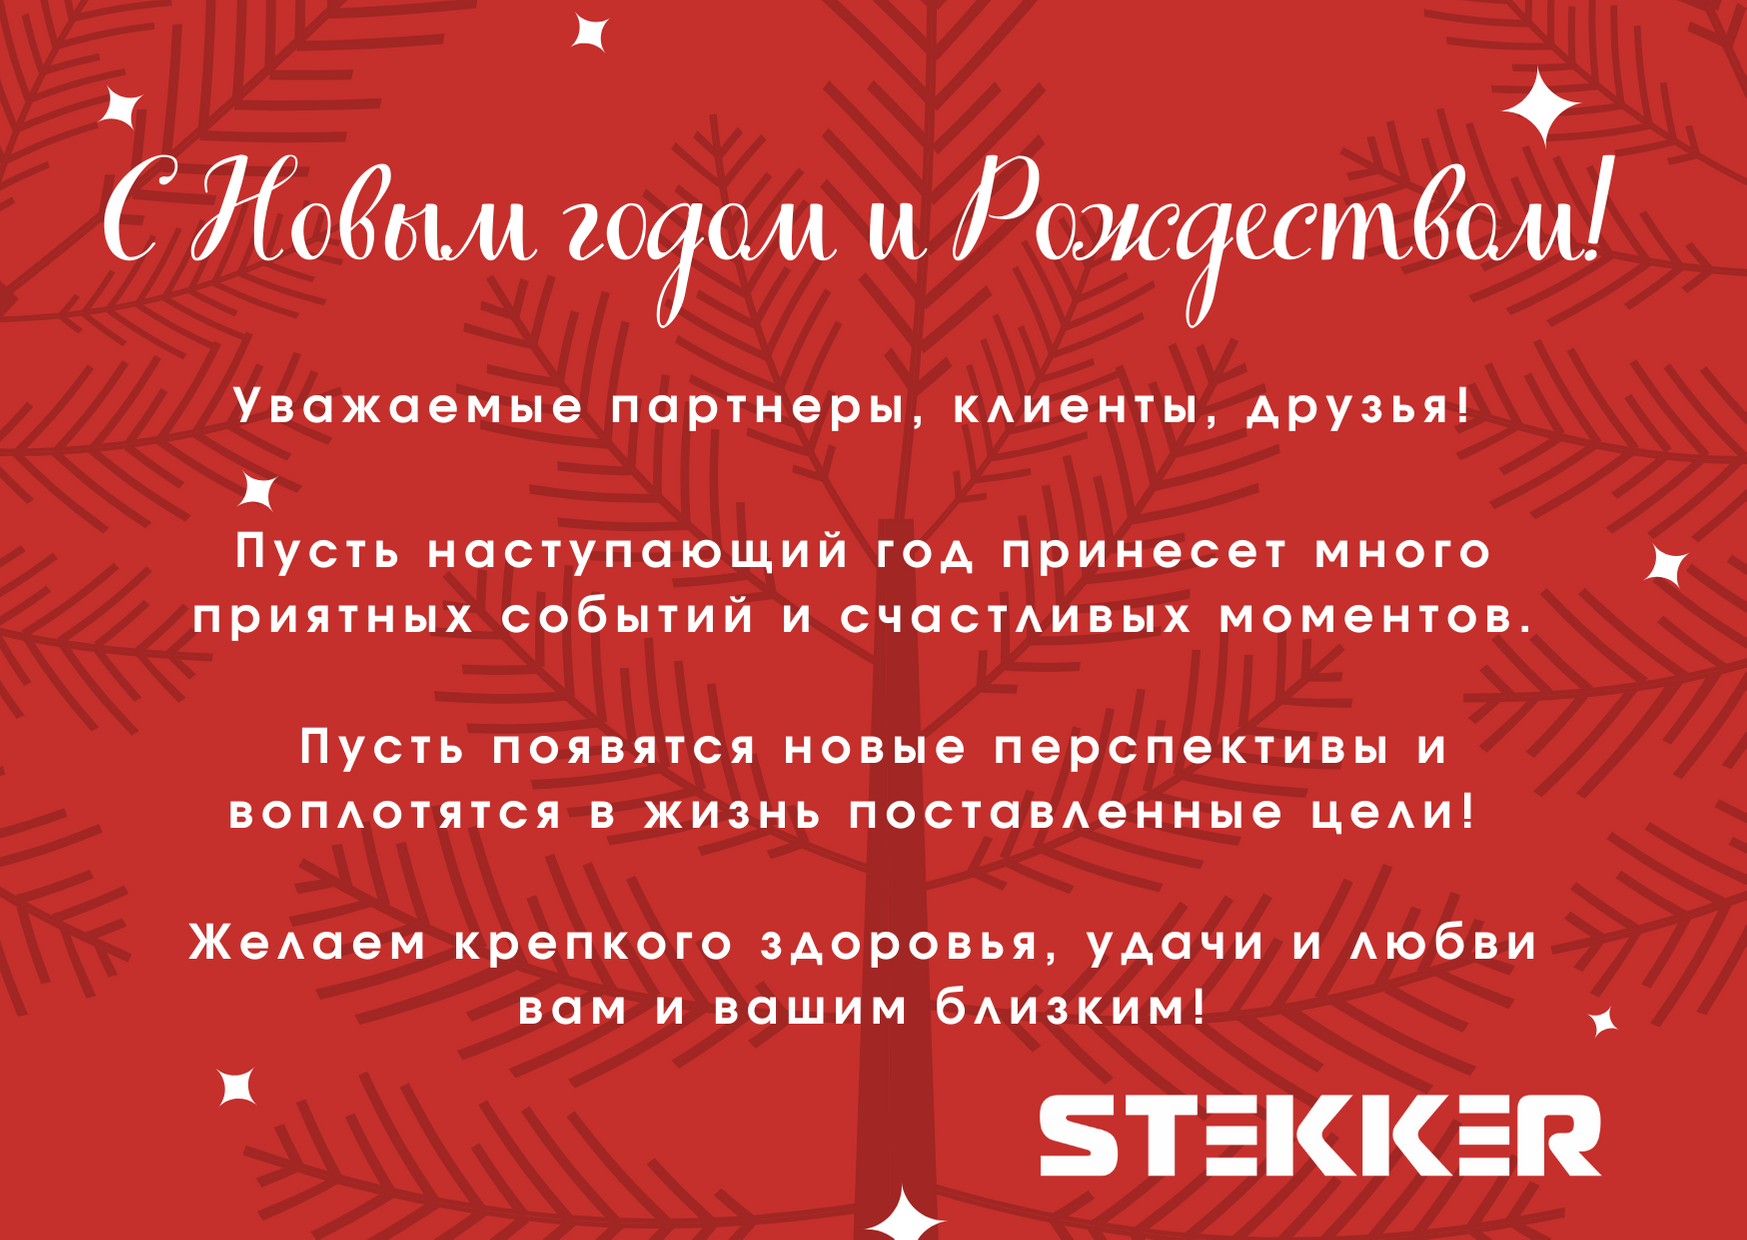 STEKKER поздравляет с Новым годом и Рождеством!